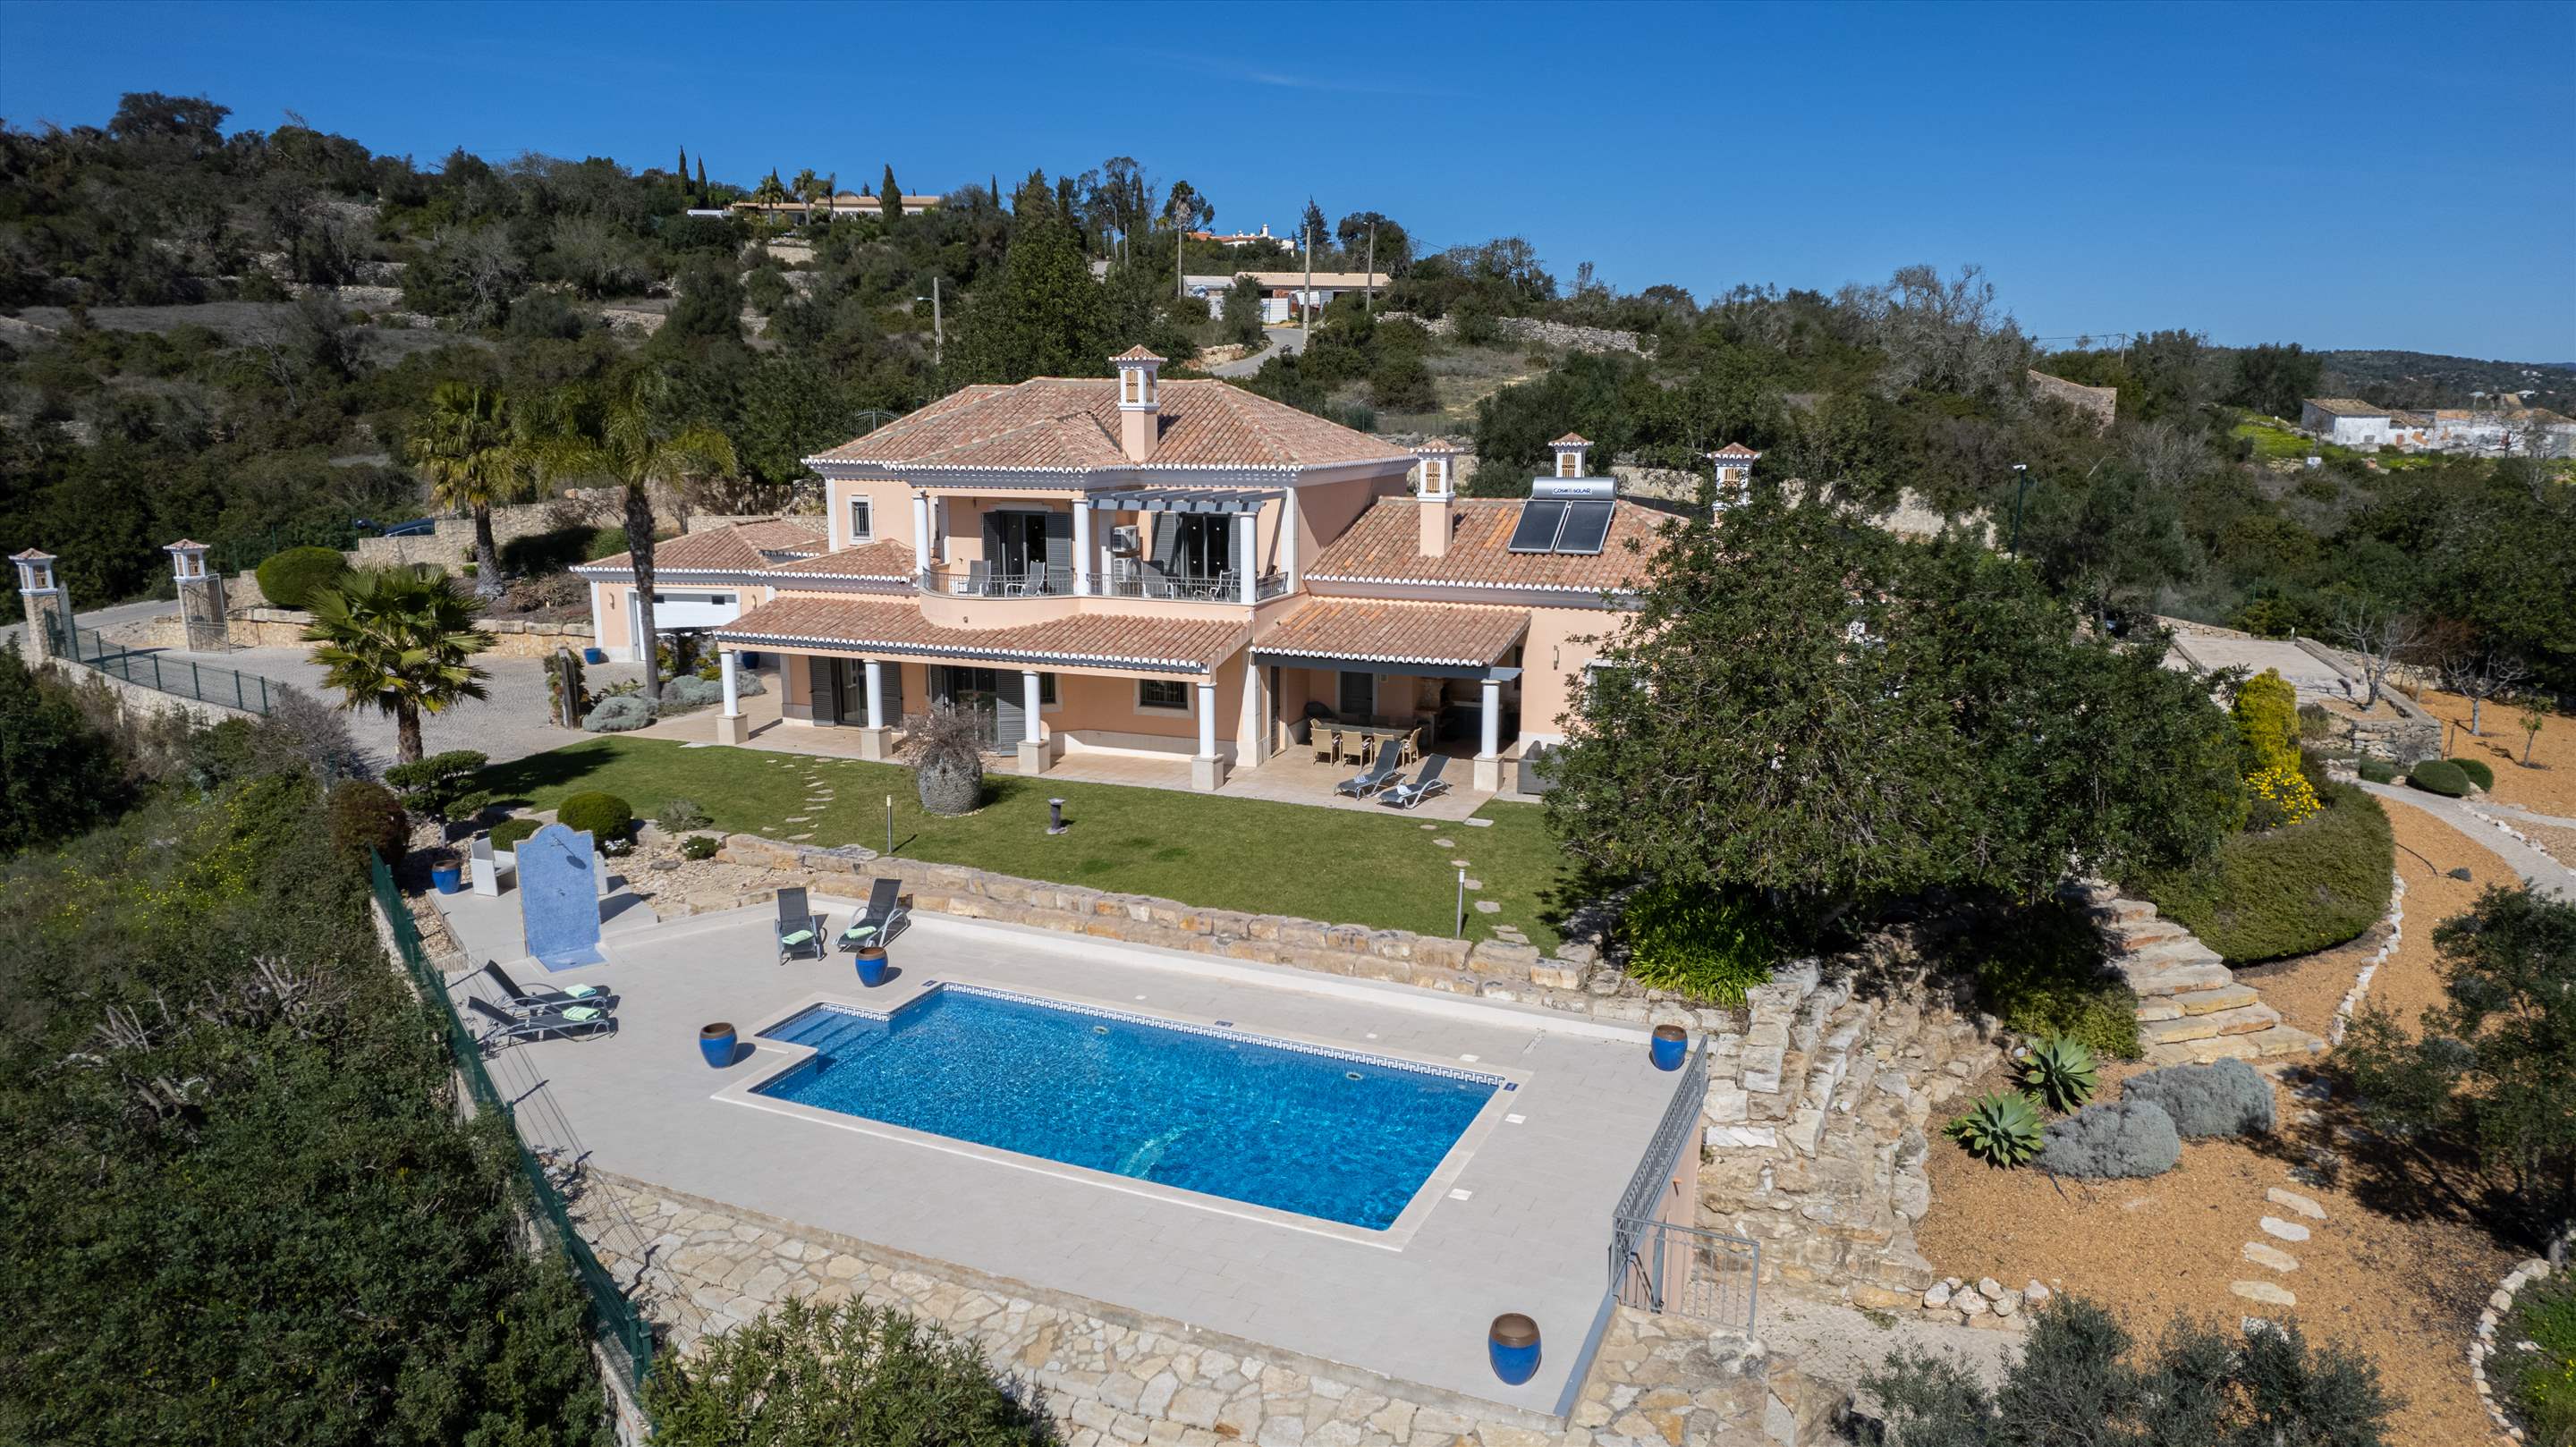 Casa da Pena Branca, Four Bedrooms, 8 Persons occupancy, 4 bedroom villa in Algarve Countryside, Algarve Photo #28